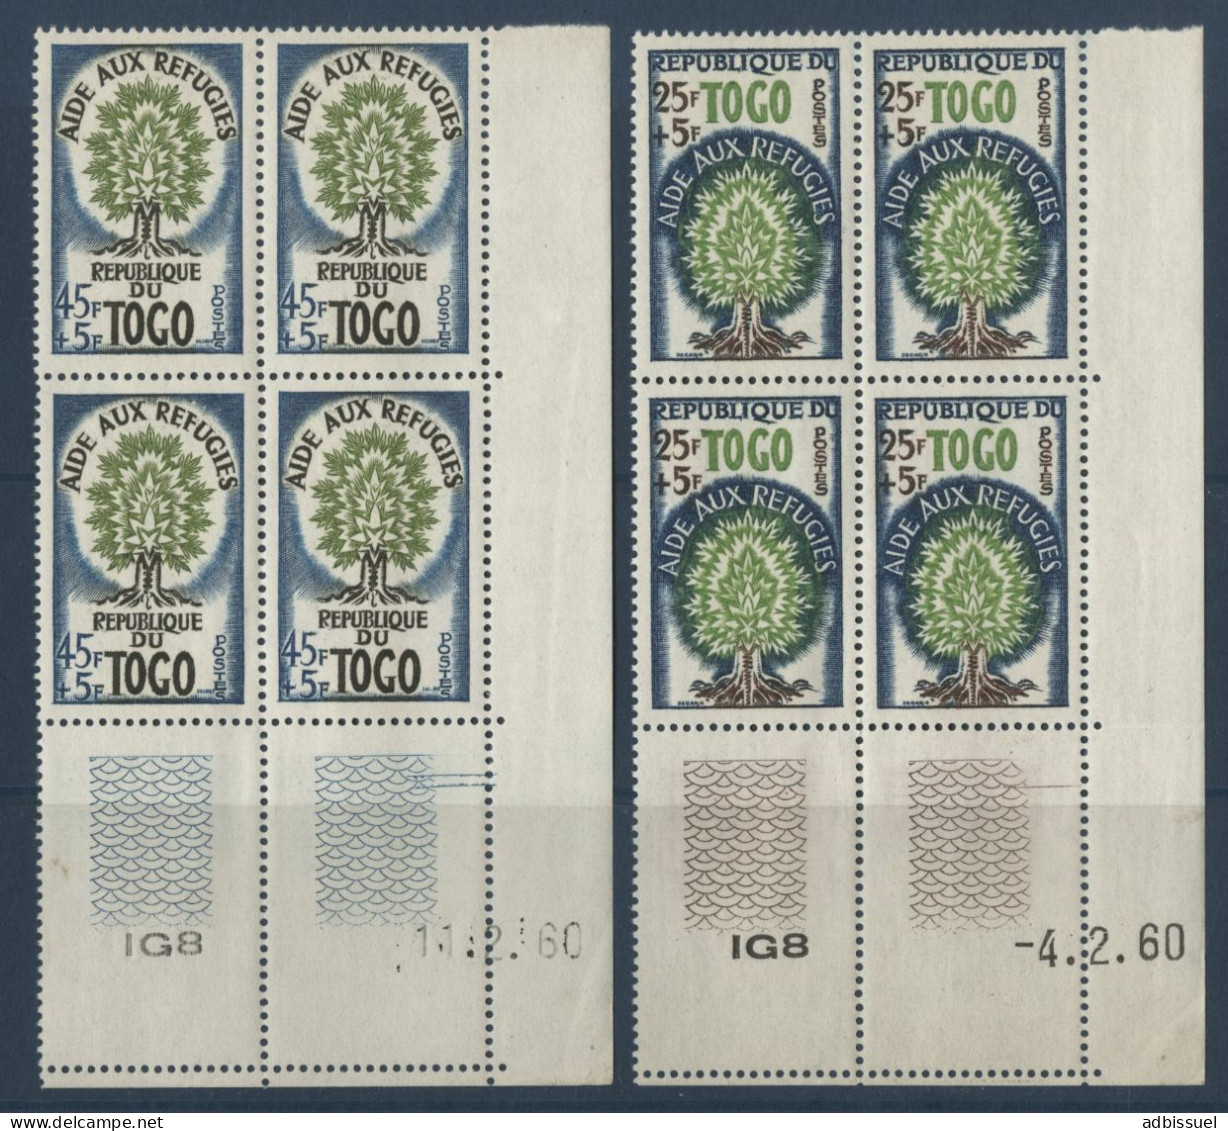 TOGO N° 307 + 308 ( X4) Neufs ** (MNH) Tous Avec Coins Datés Aide Aux Réfugiés Voir Suite - Togo (1960-...)